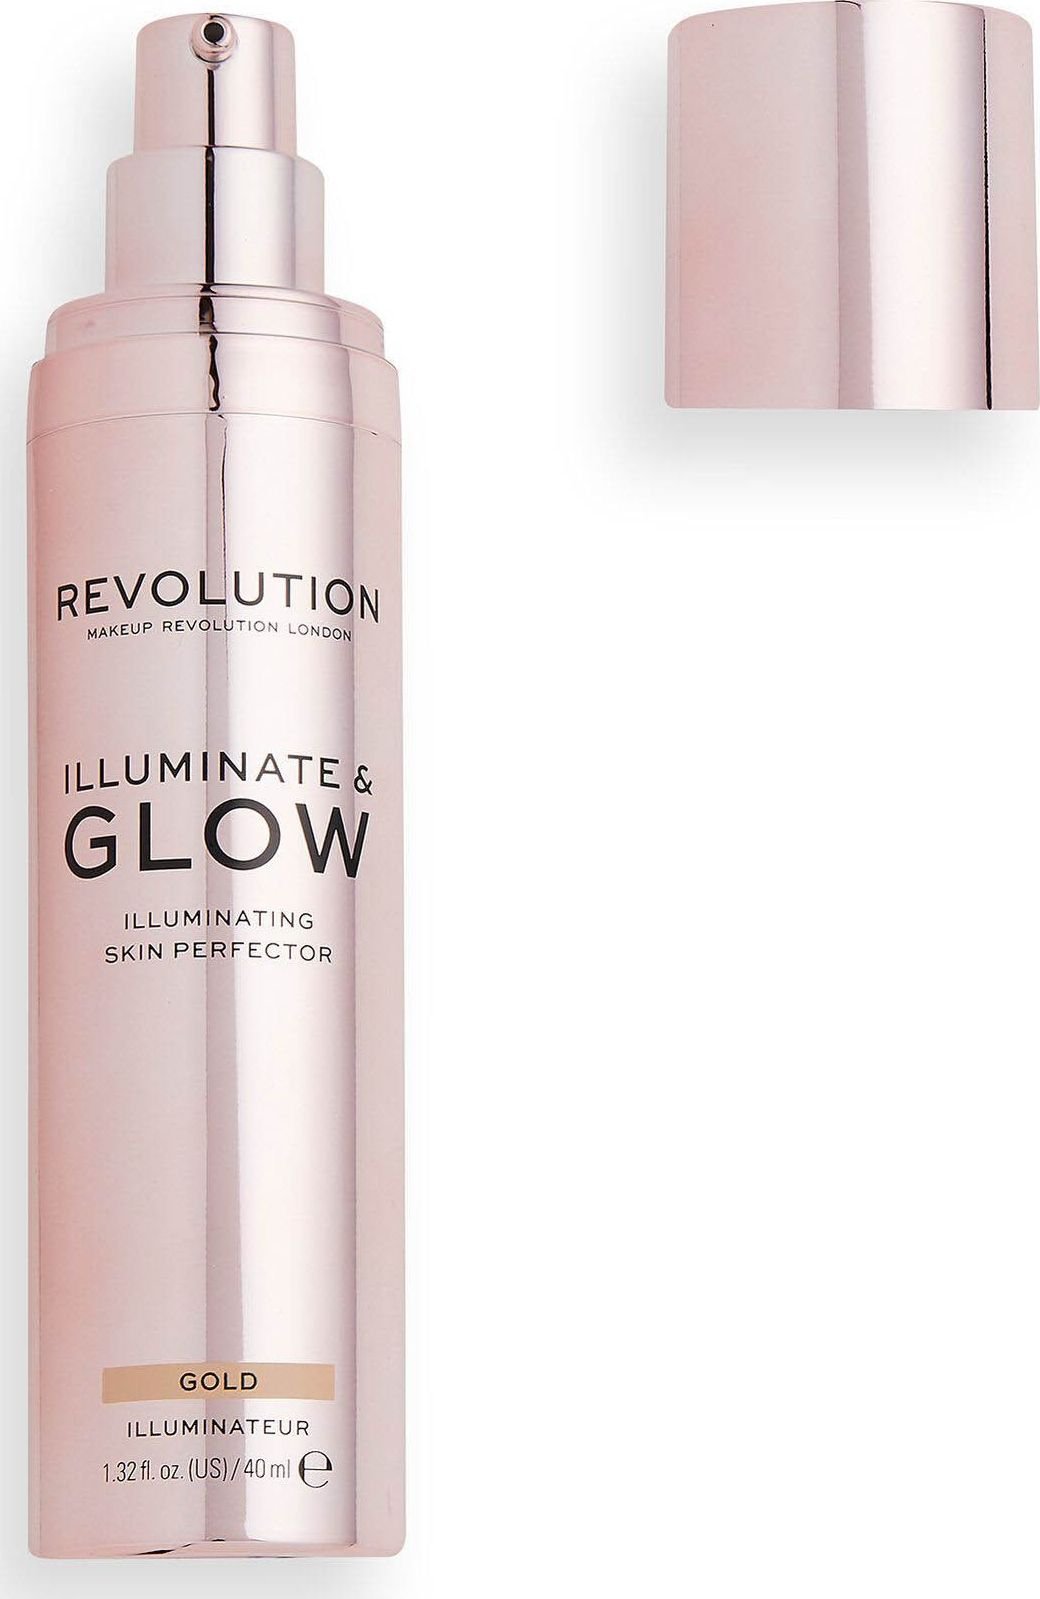 Machiaj Revolutia London Glow si Iluminati Rozsiwetlare 40mlAur Makeup Revolution este o marca de machiaj care provine din Londra si are ca scop sa ofere produse de calitate la preturi accesibile. Produsul lor numit Glow &amp; Illuminate este un rozsiwe